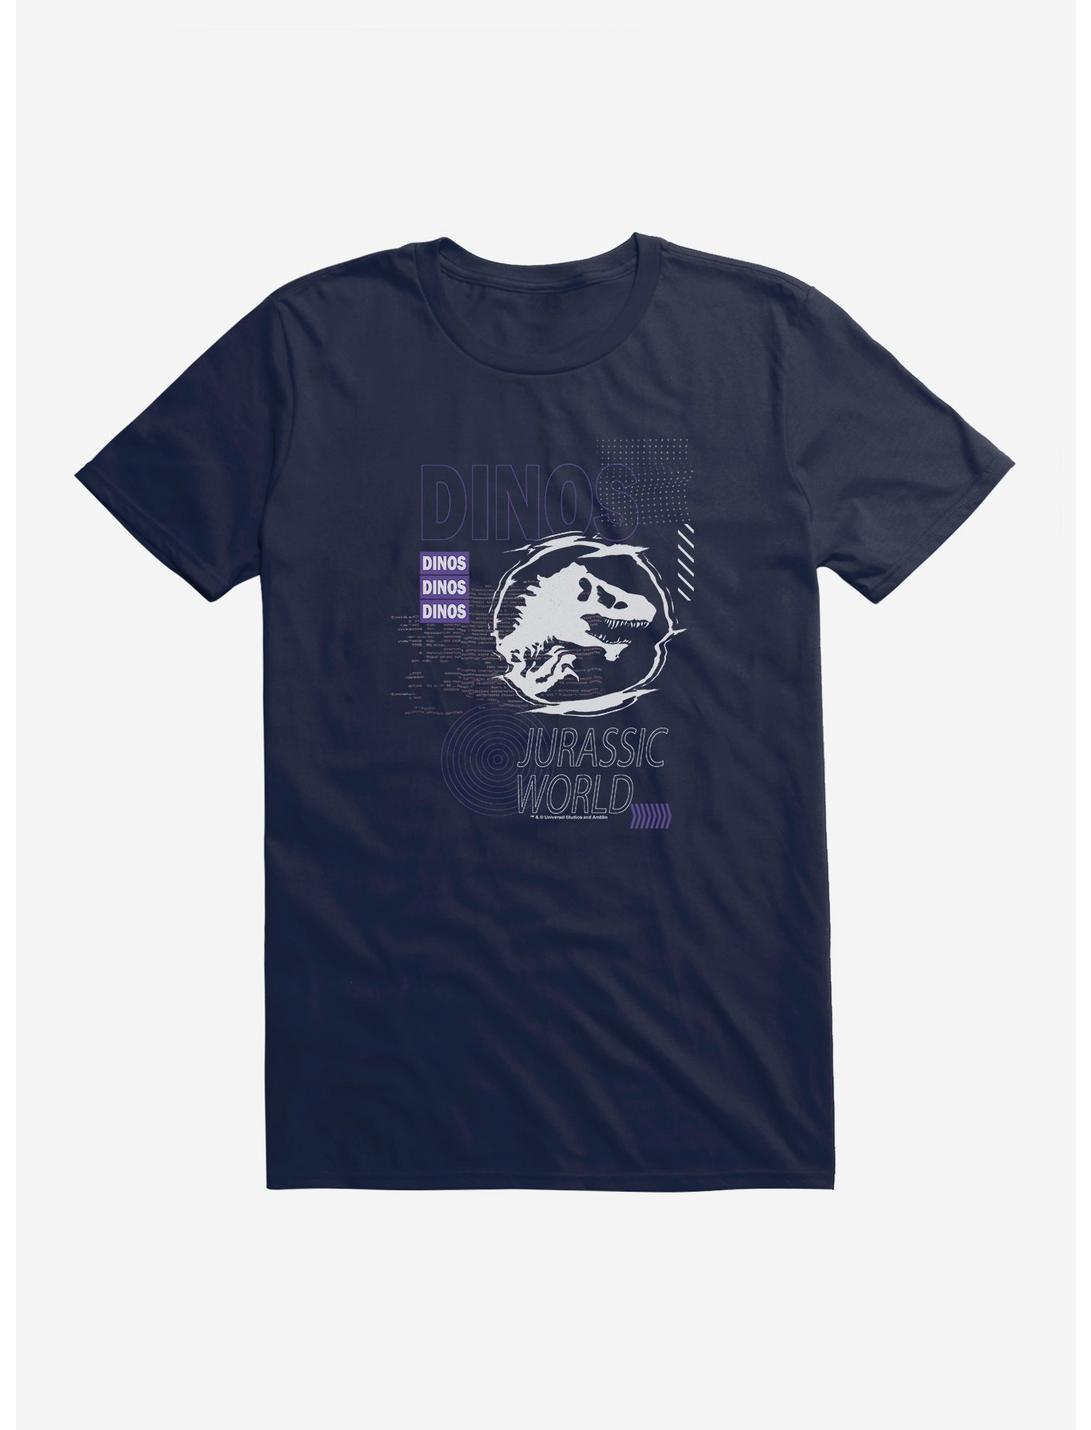 Jurassic Park Dinos World T-Shirt, MIDNIGHT NAVY, hi-res